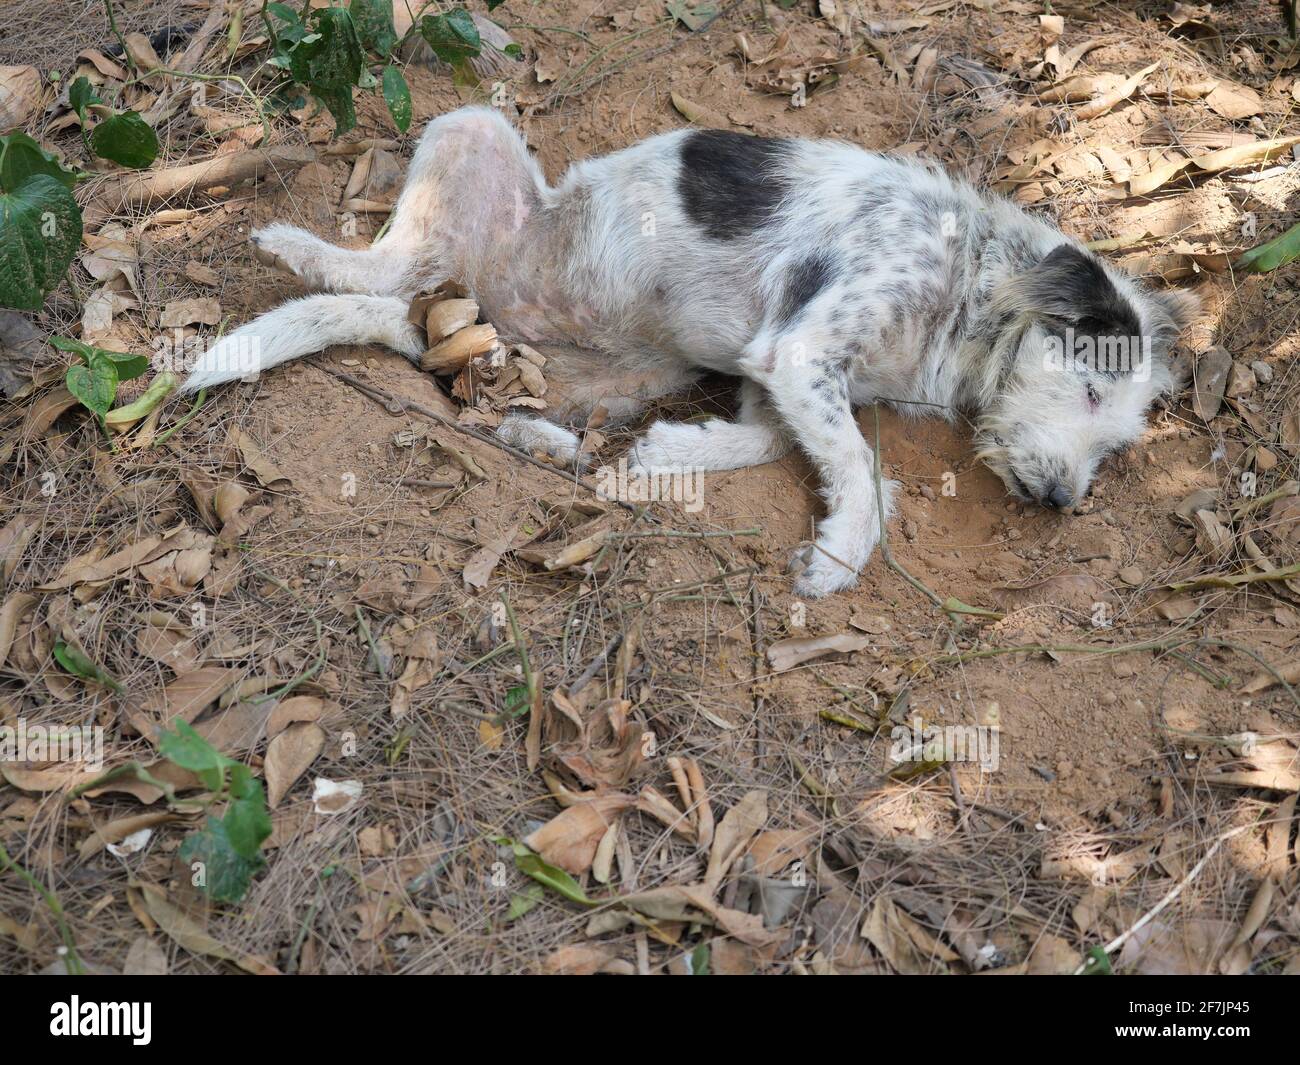 Cane bianco e nero a strisce che riposa nel buco scavato dove scavare, comportamento naturale degli animali domestici all'aperto Foto Stock